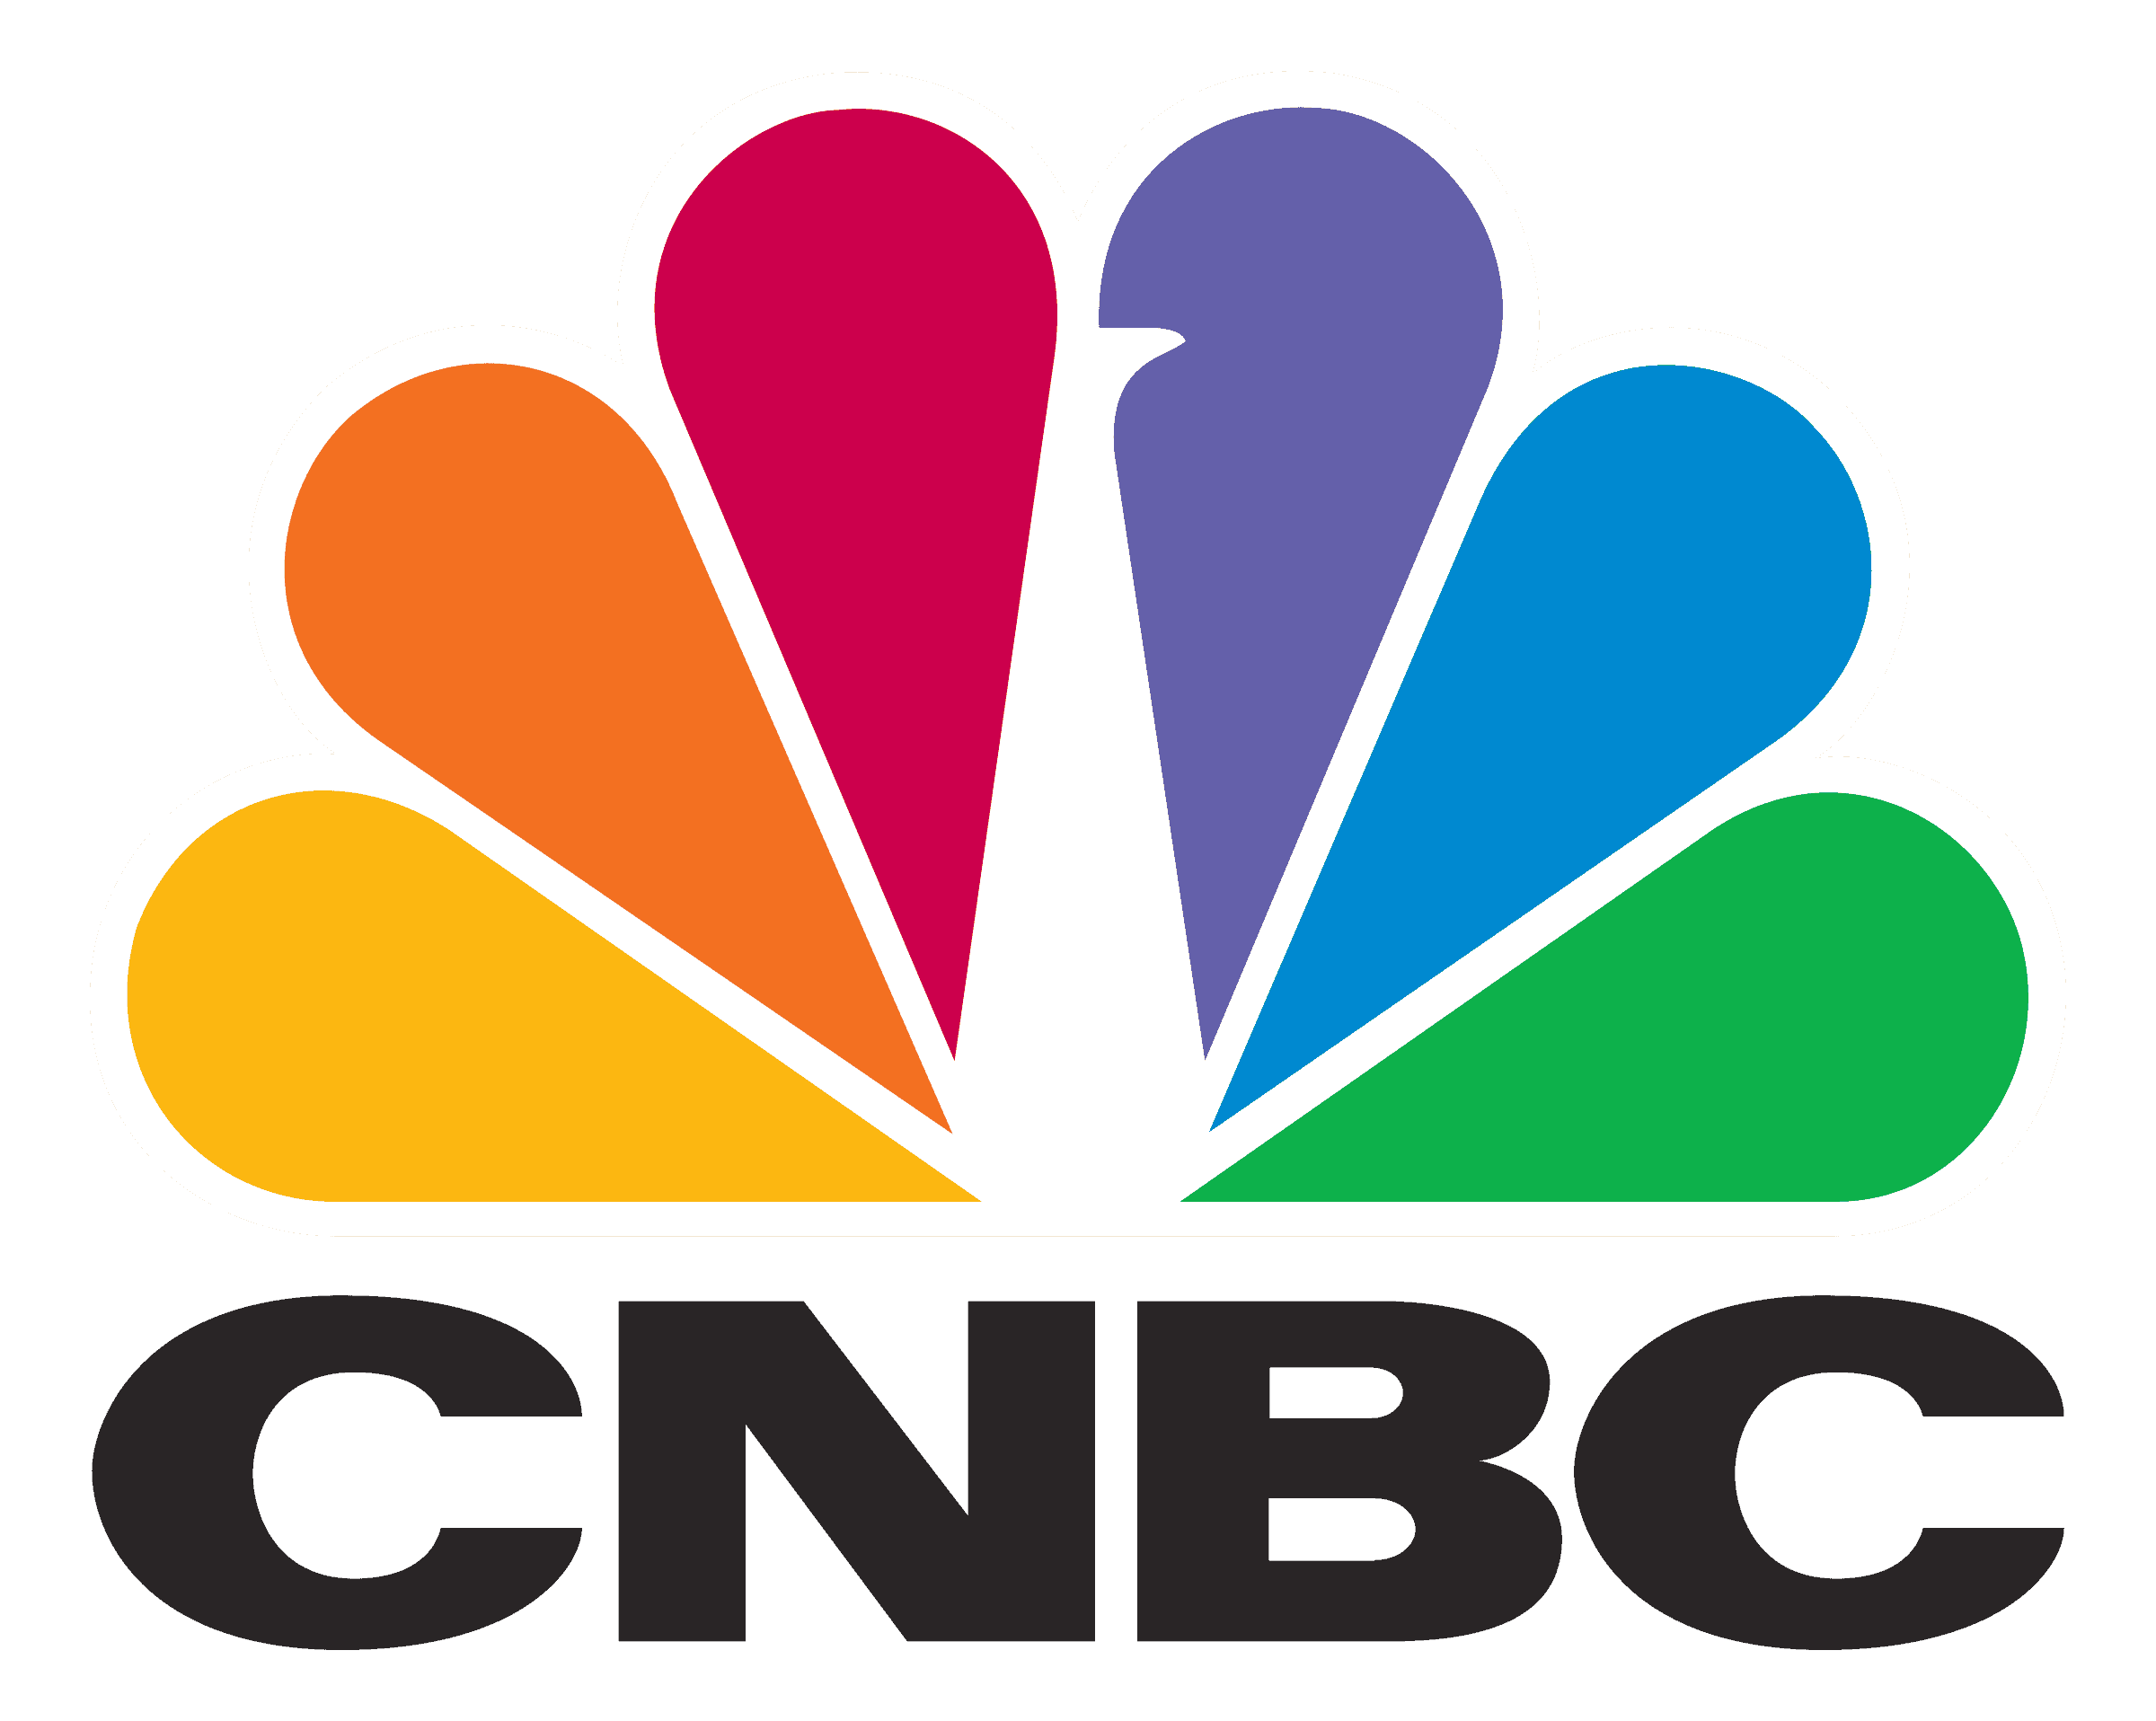 cnbc logo transparent